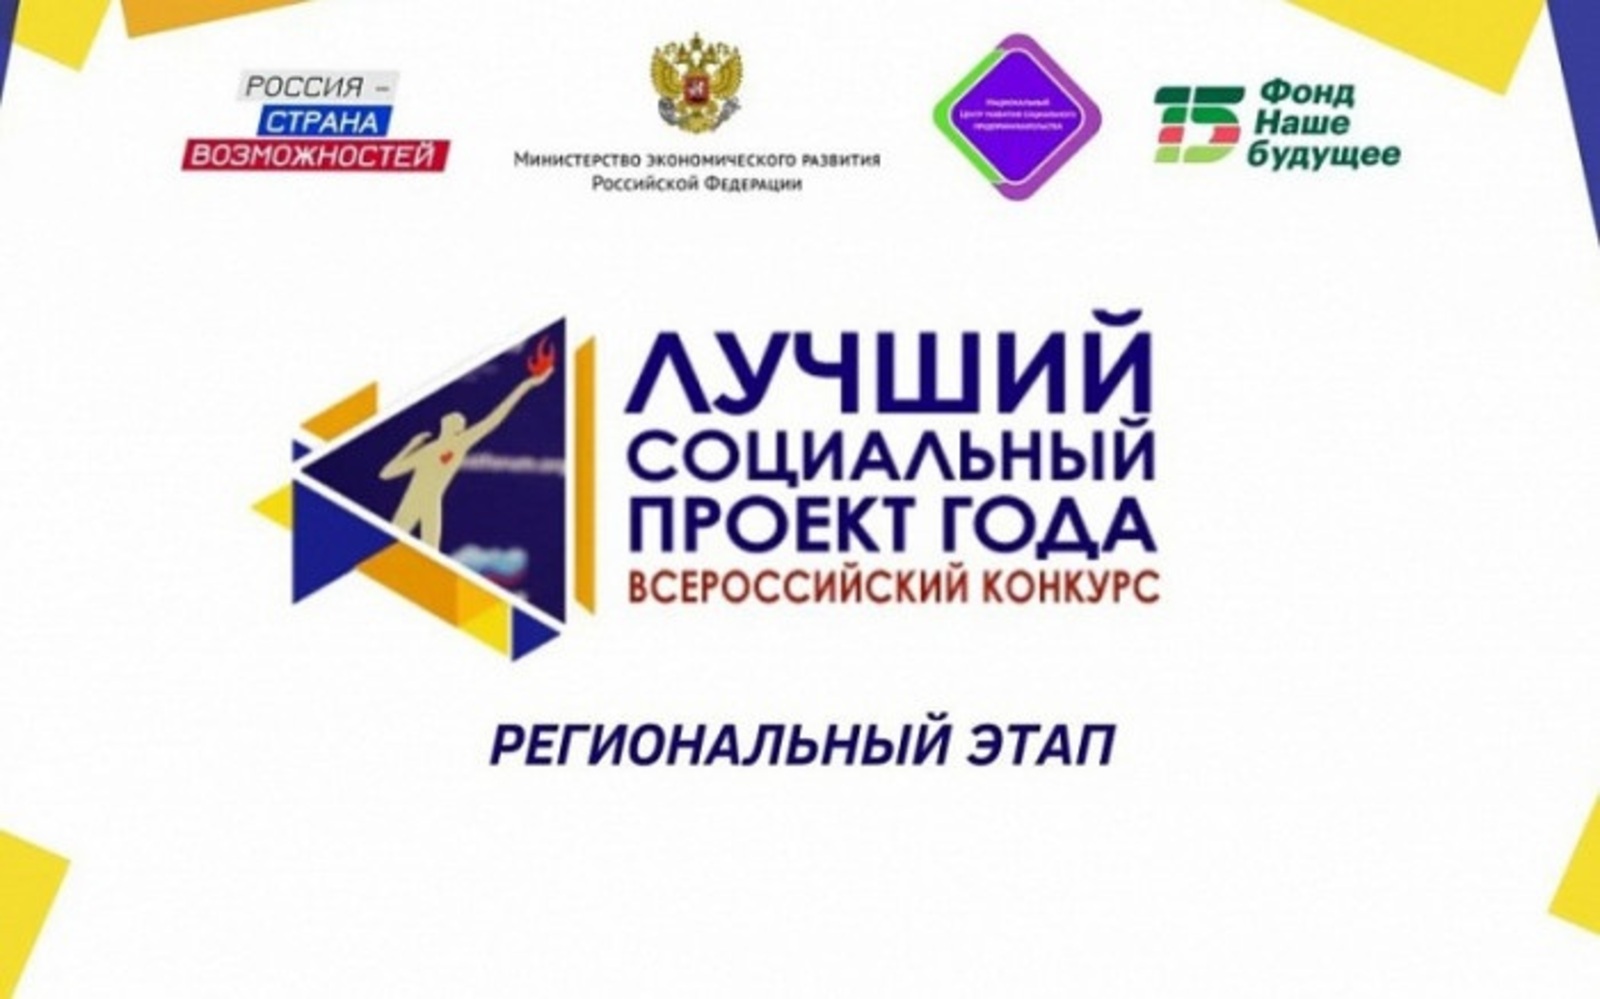 В Башкирии объявили конкурс на лучший социальный проект